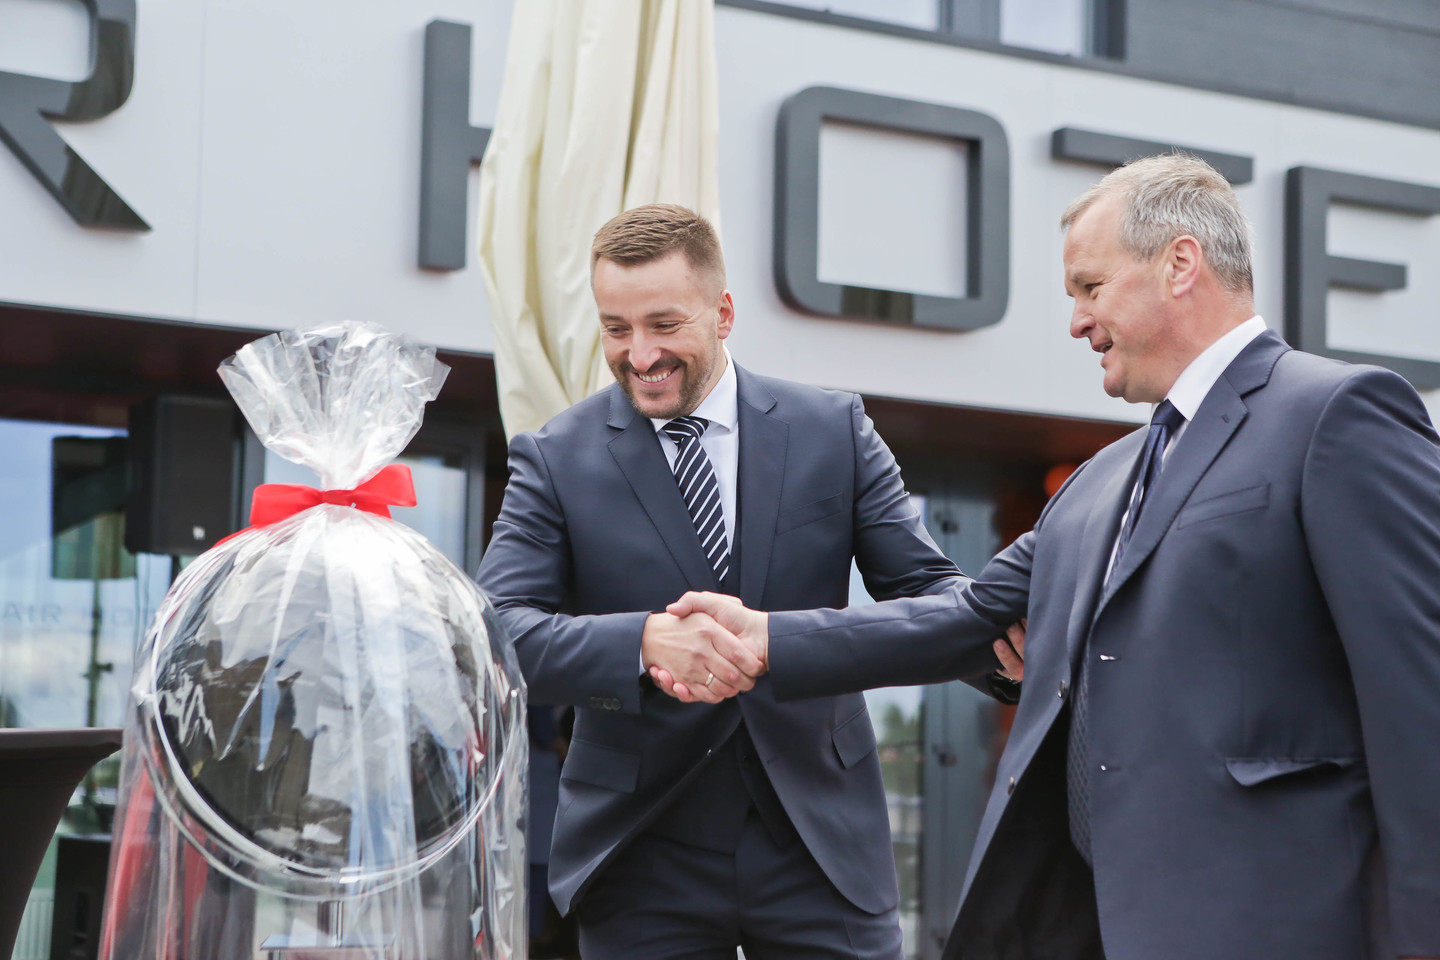 Šalia Kauno oro uosto Karmėlavoje penktadienio popietę duris atvėrė naujas viešbutis „Air Hotel“.<br> G.Bitvinsko nuotr.